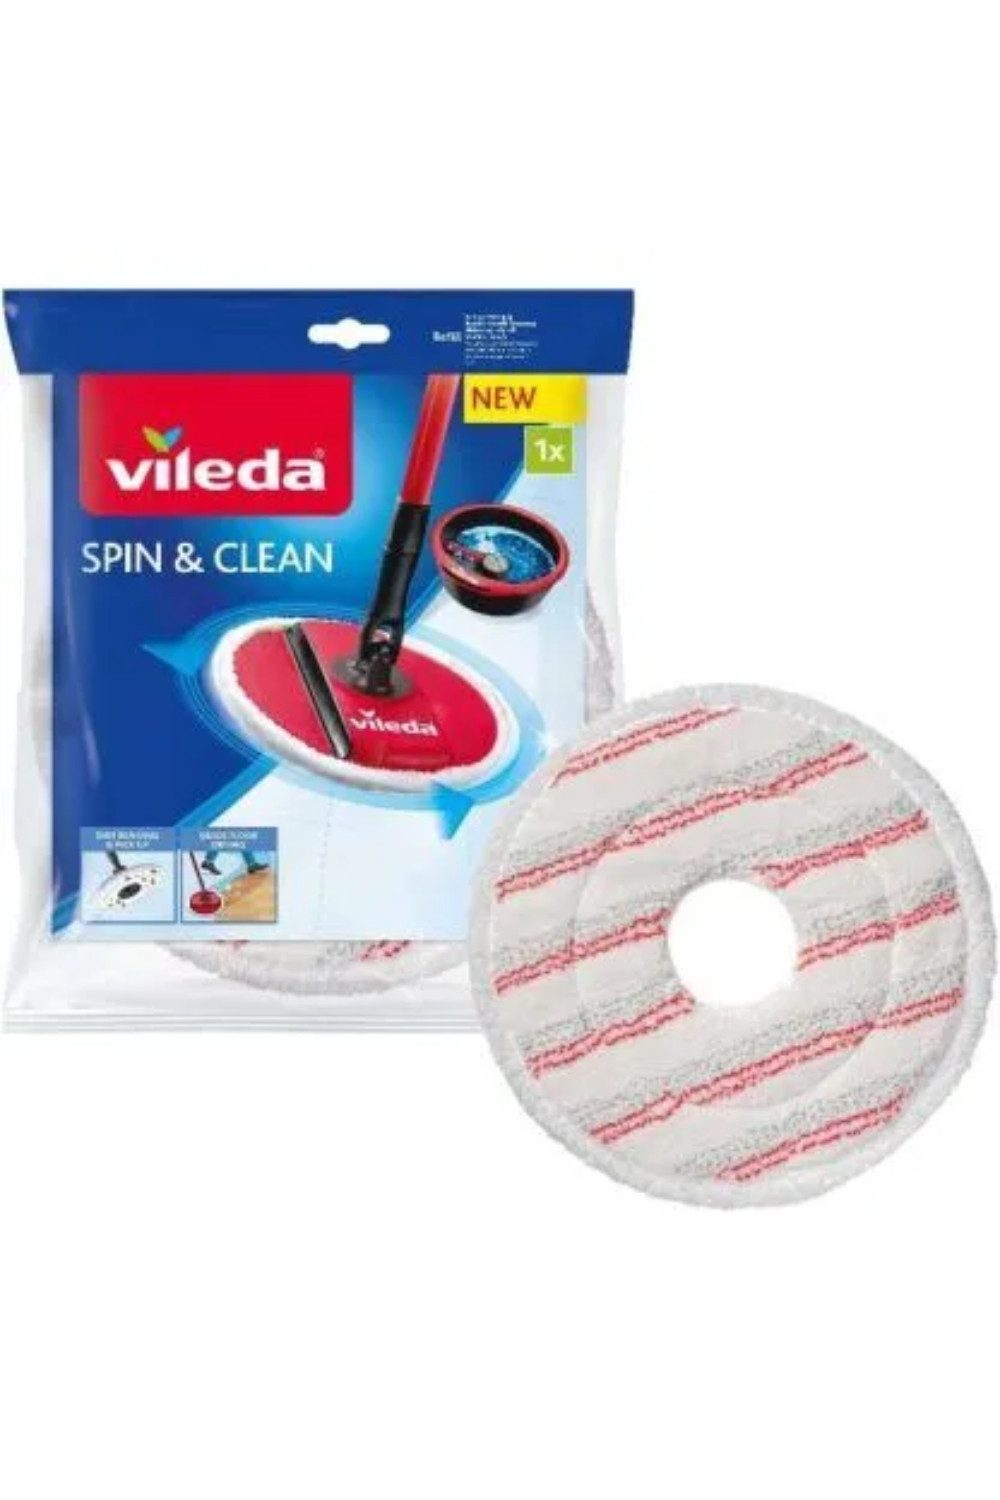 Vileda Abdeckhaube Ersatzbezug Spin & Clean Vileda 161822 27cm, weiß mit roten Streifen